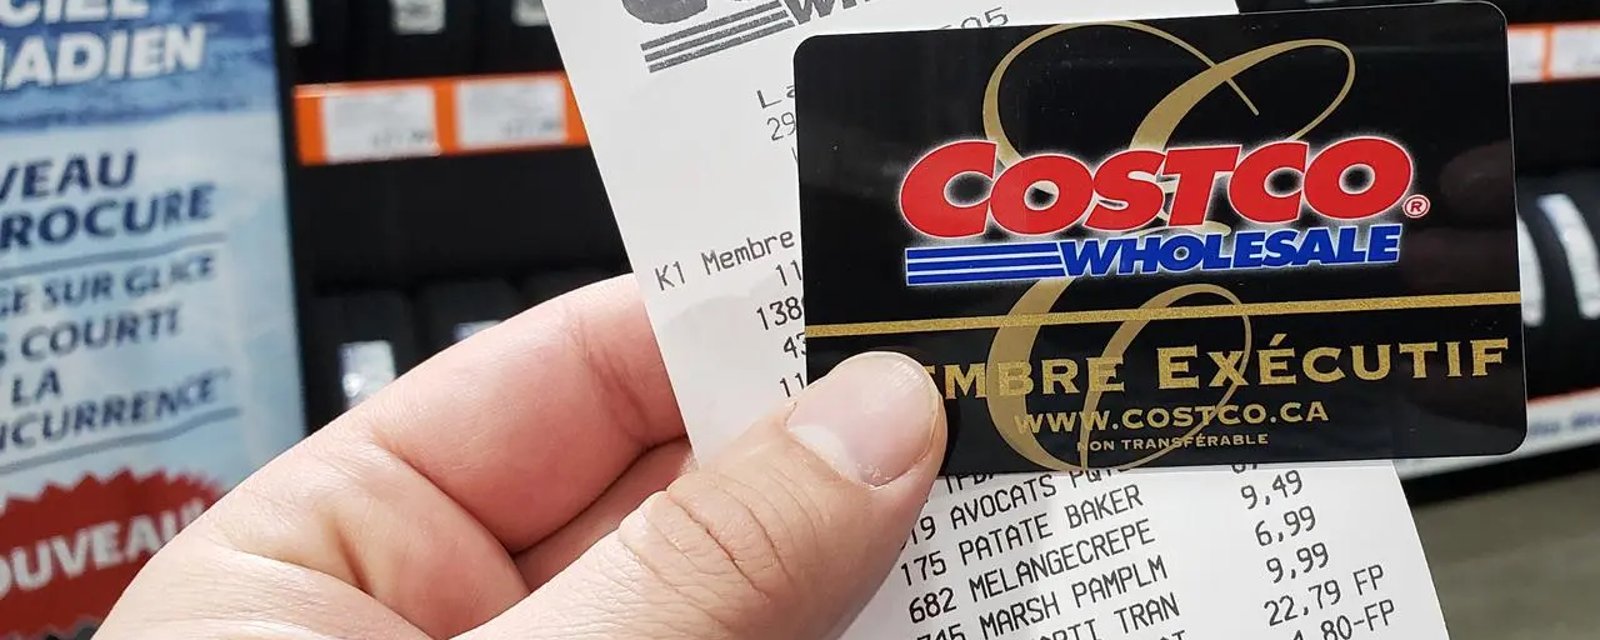 Costco a ouvert ses portes il y a 40 ans, voici combien en coûtait le prix de la carte de membre à l'époque